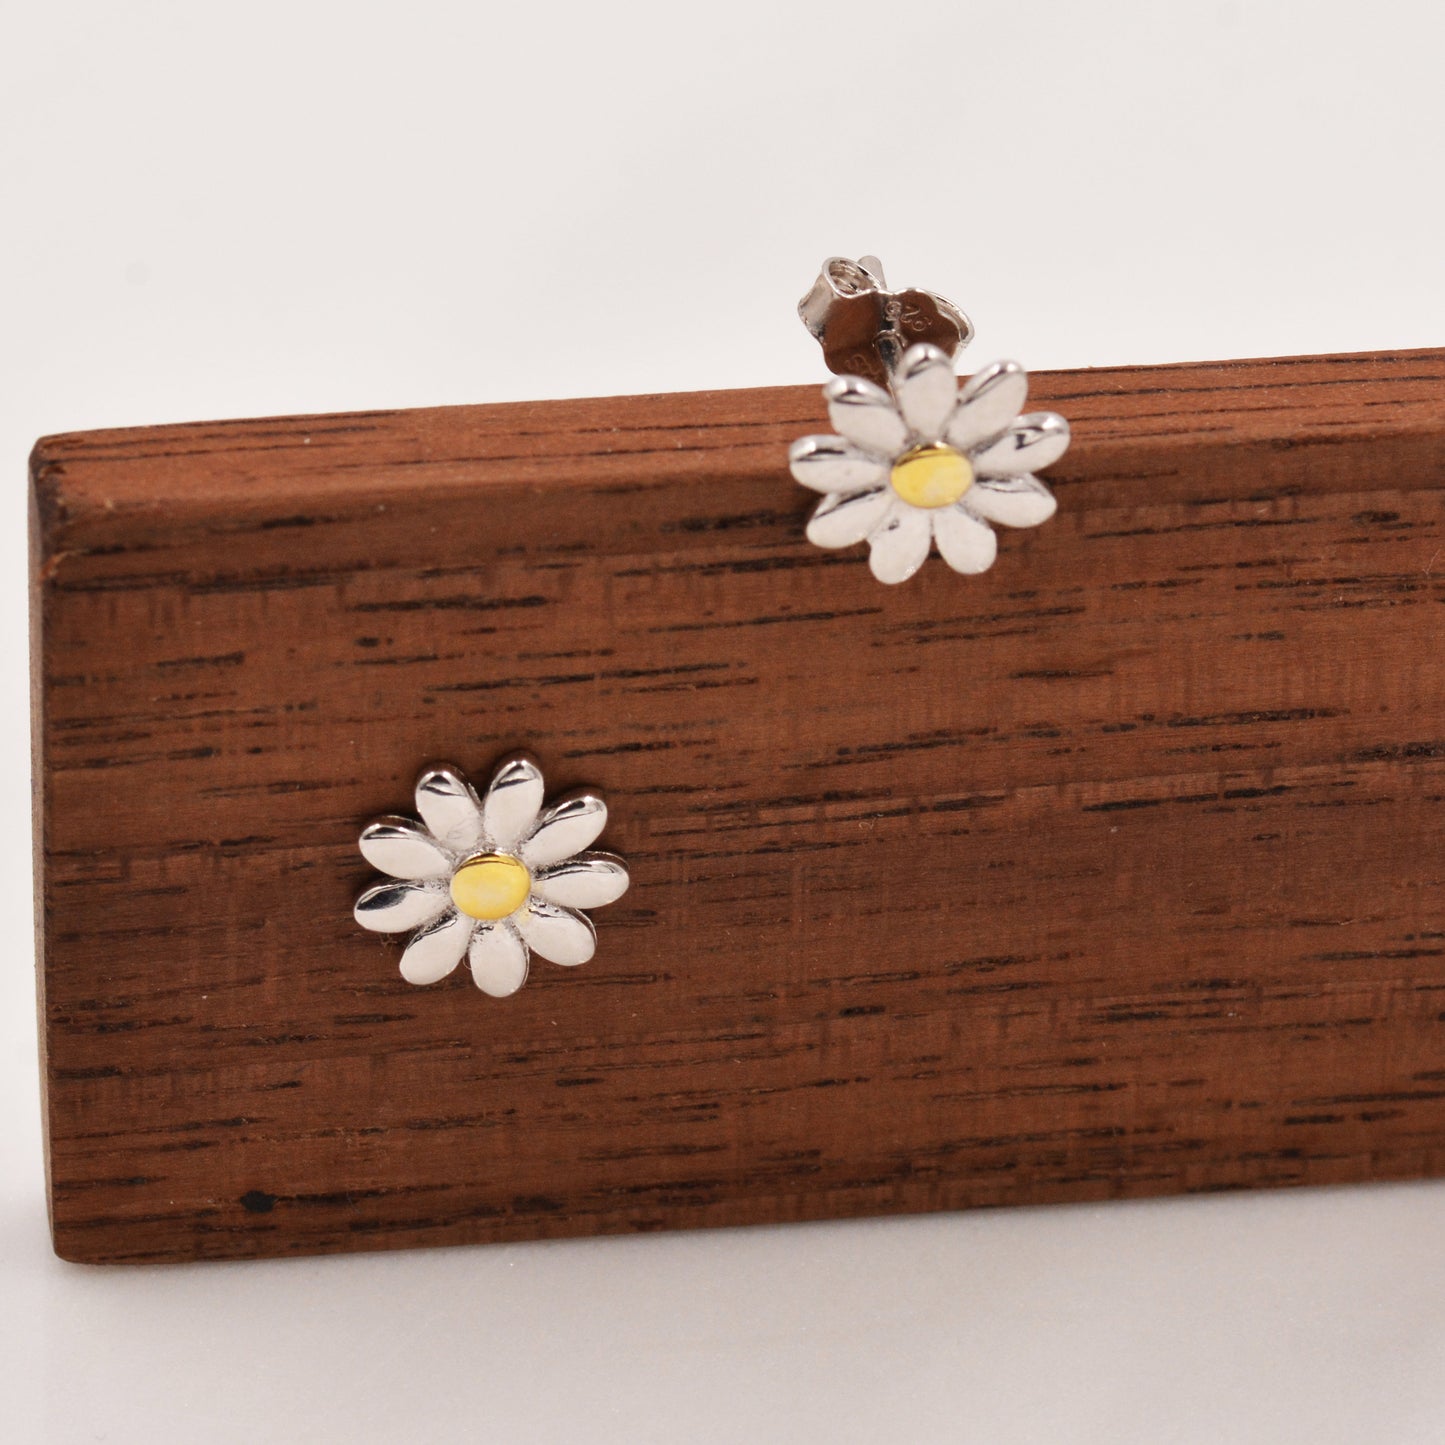 Little Daisy Flower Stud Earrings in Sterling Silver - Cute Flower Blossom Earrings  -   Fun, Whimsical